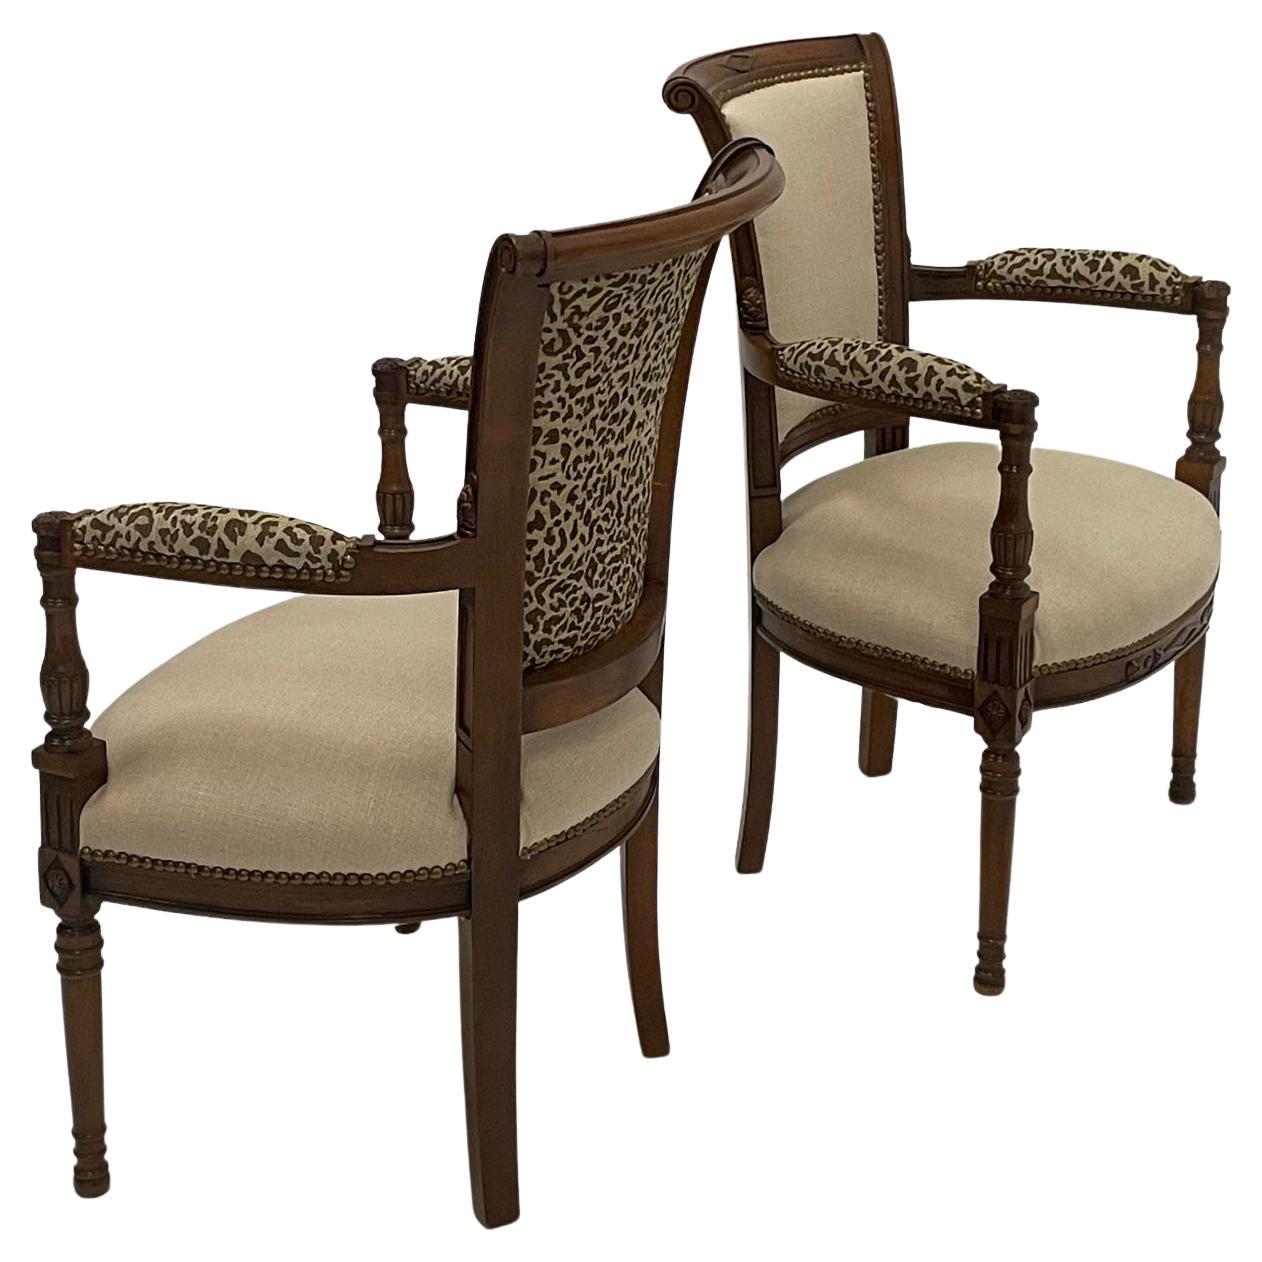 Stilvolles Paar geschnitzter Sessel aus Nussbaumholz, gepolstert mit Leinen und Leopardenmuster